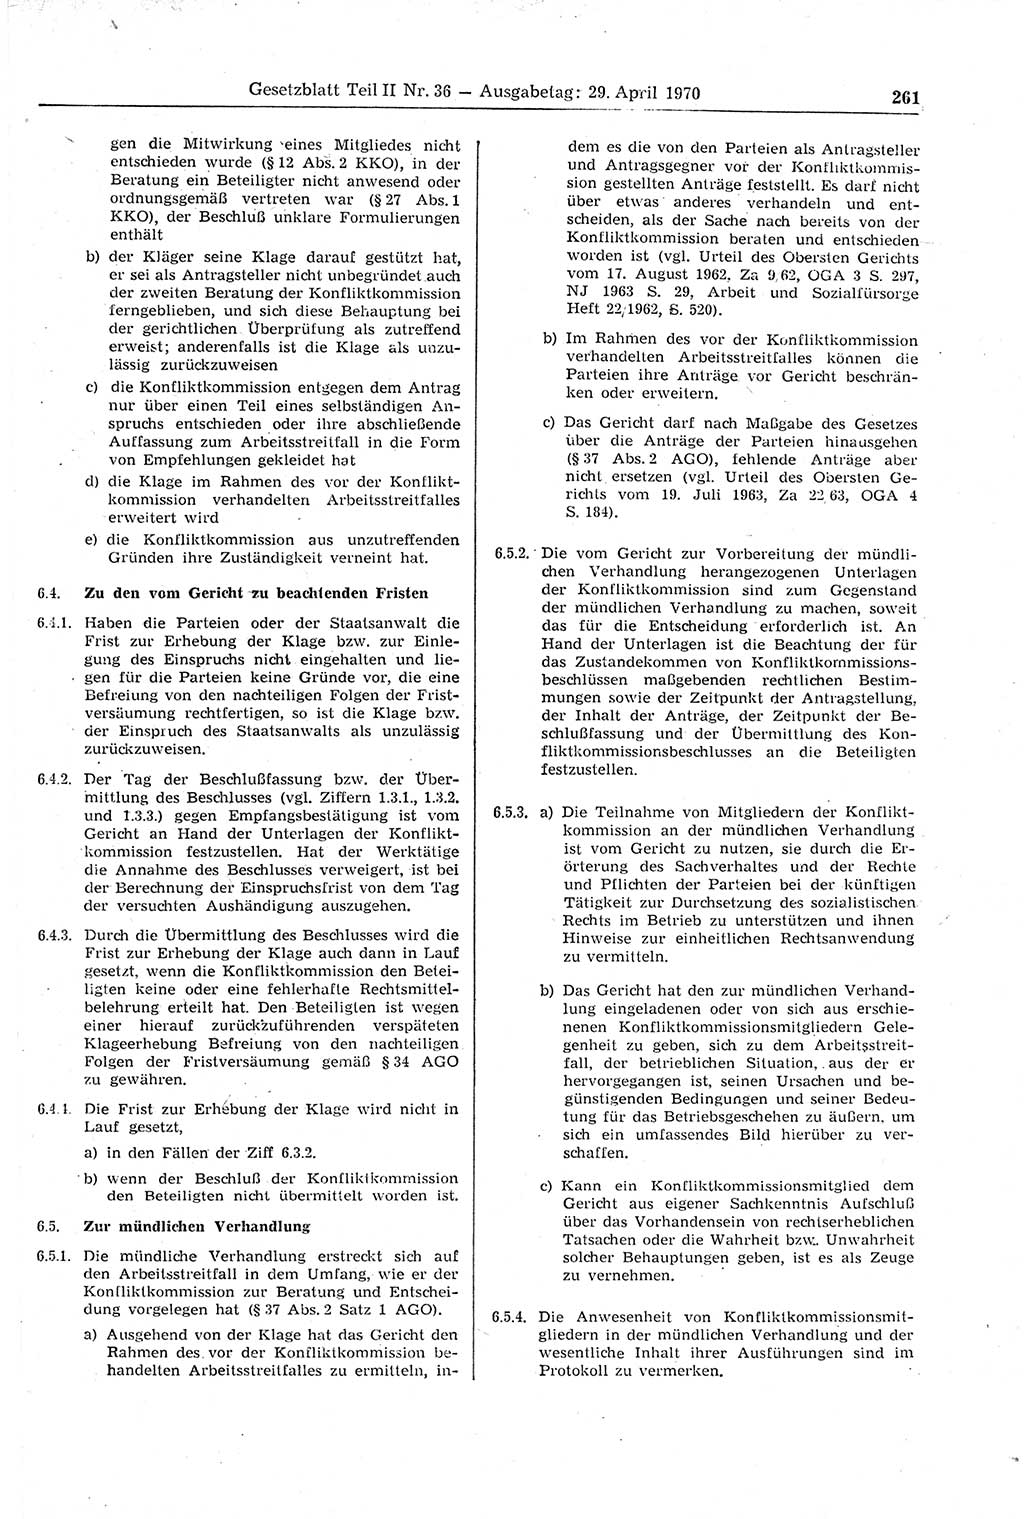 Gesetzblatt (GBl.) der Deutschen Demokratischen Republik (DDR) Teil ⅠⅠ 1970, Seite 261 (GBl. DDR ⅠⅠ 1970, S. 261)